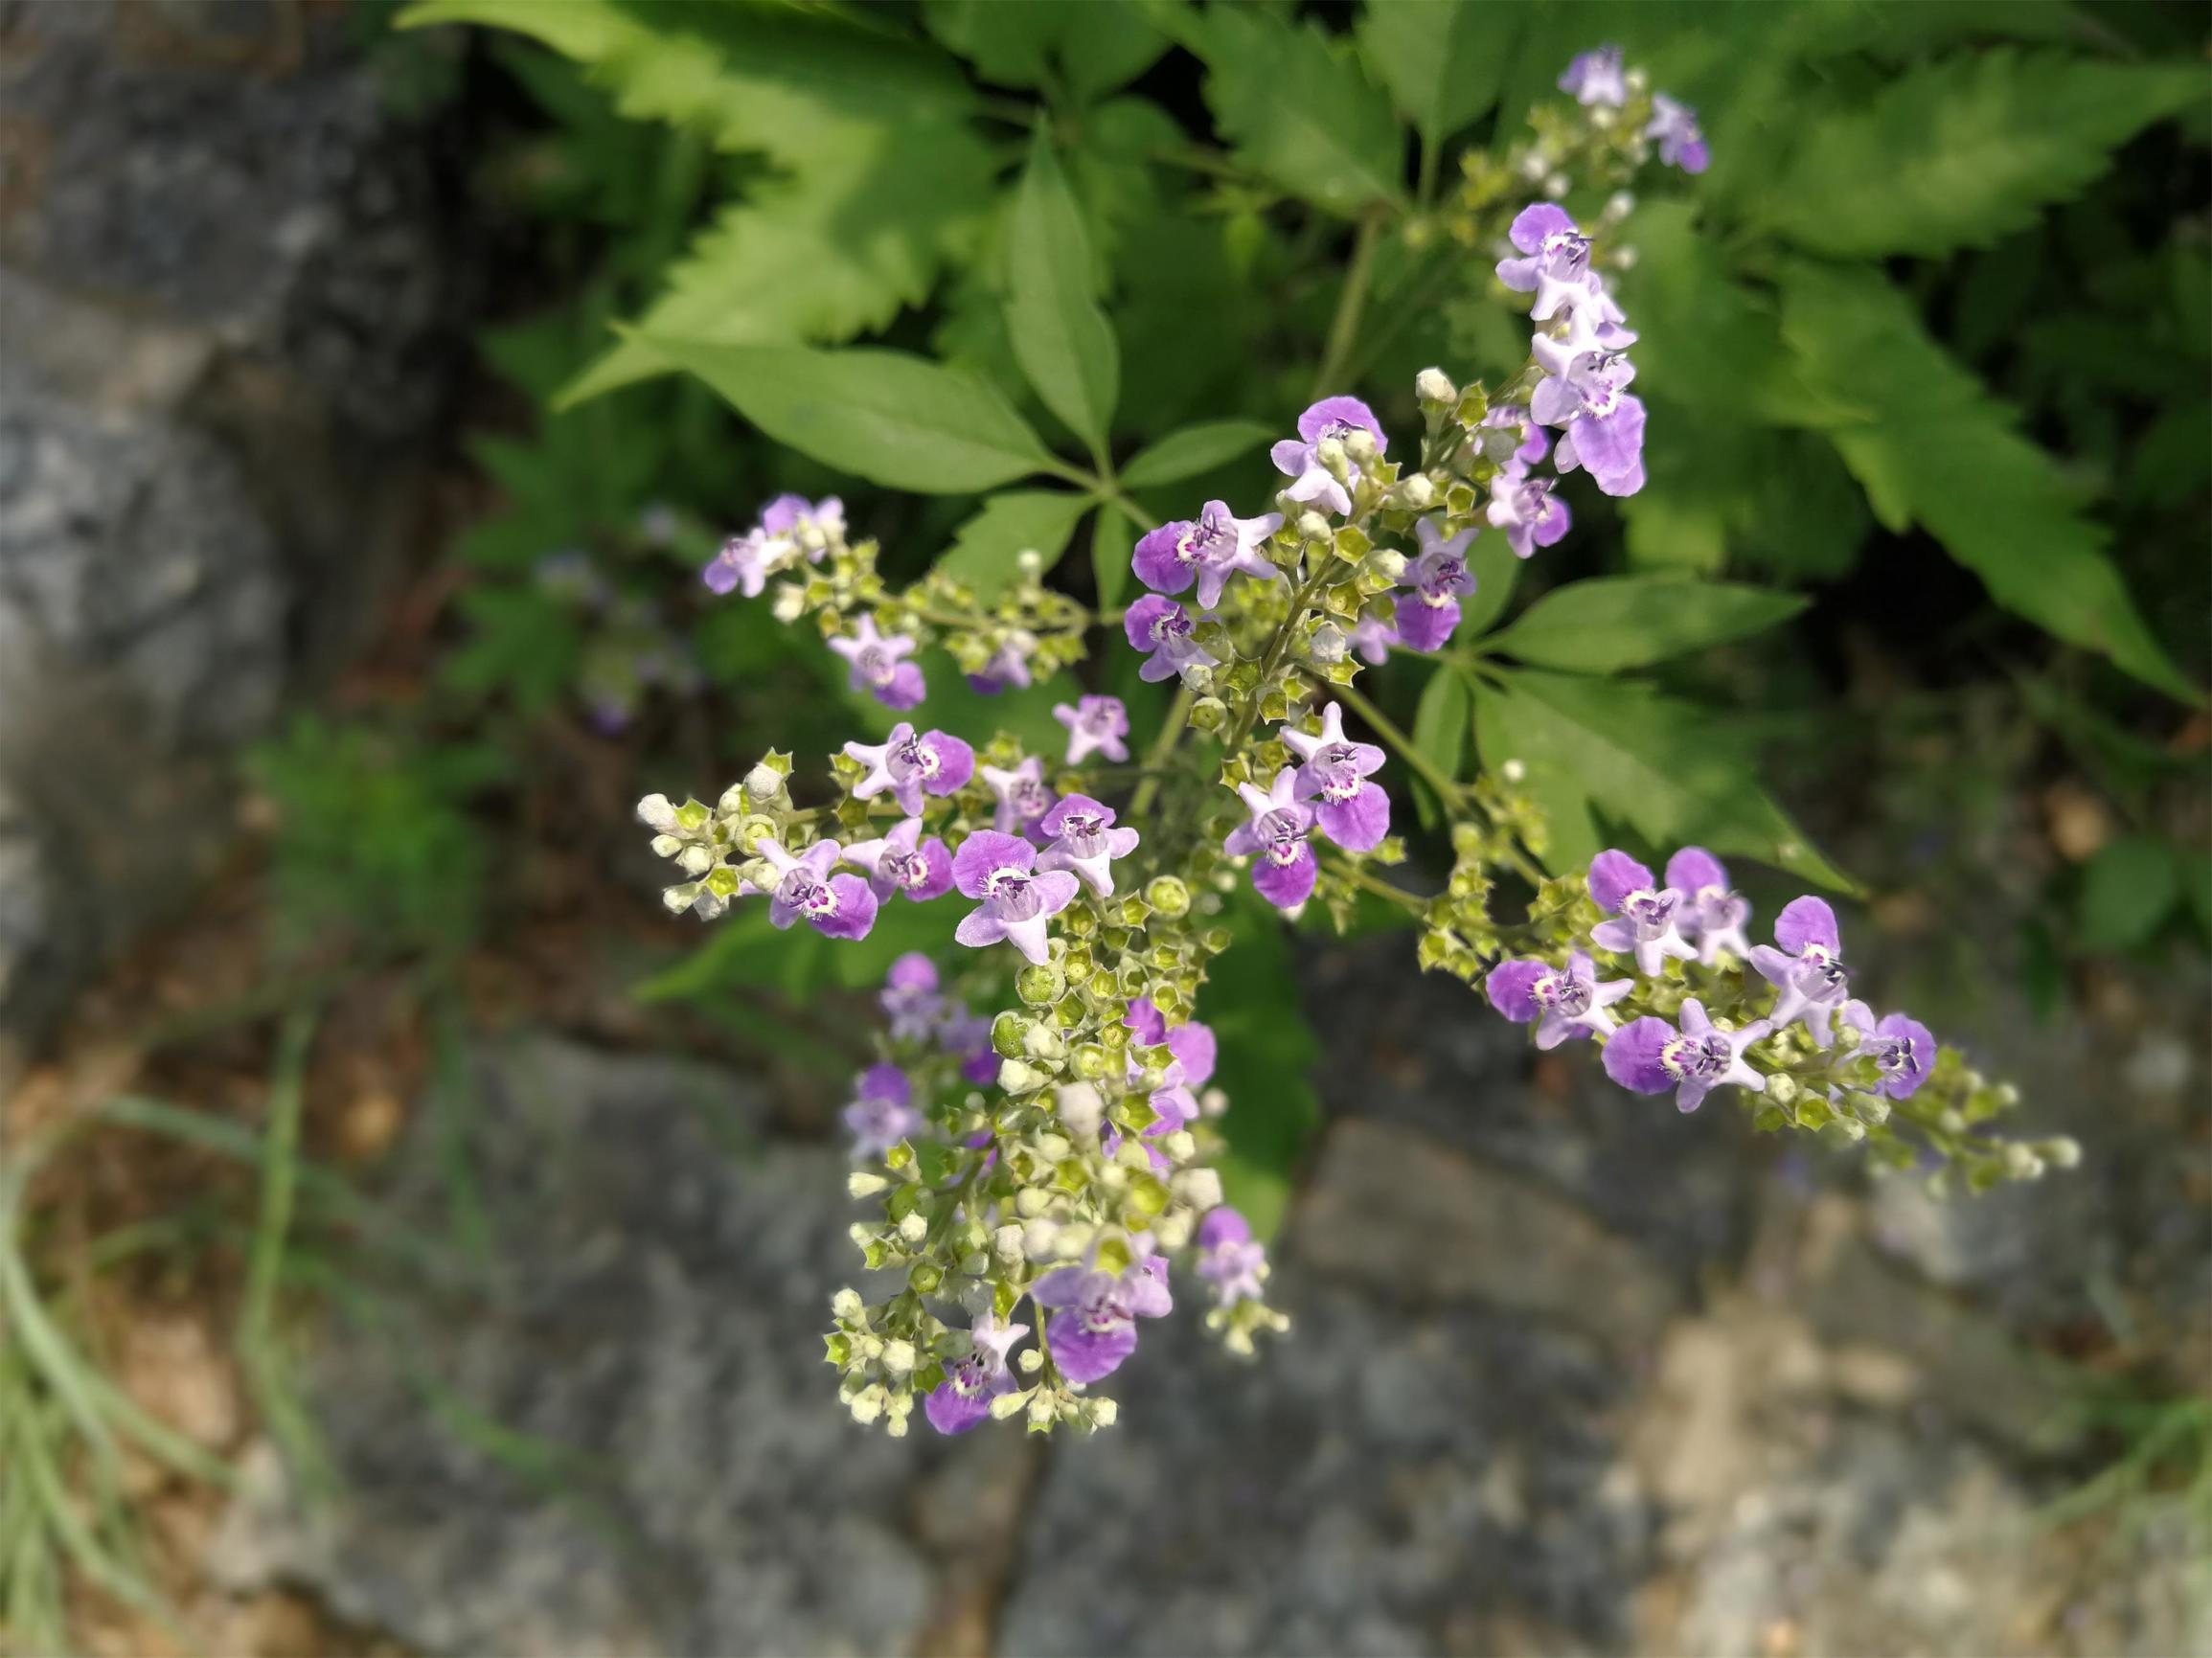 山道上生长着许许多多的黄荆, 正值开花期, 小小的紫色花朵十分漂亮.